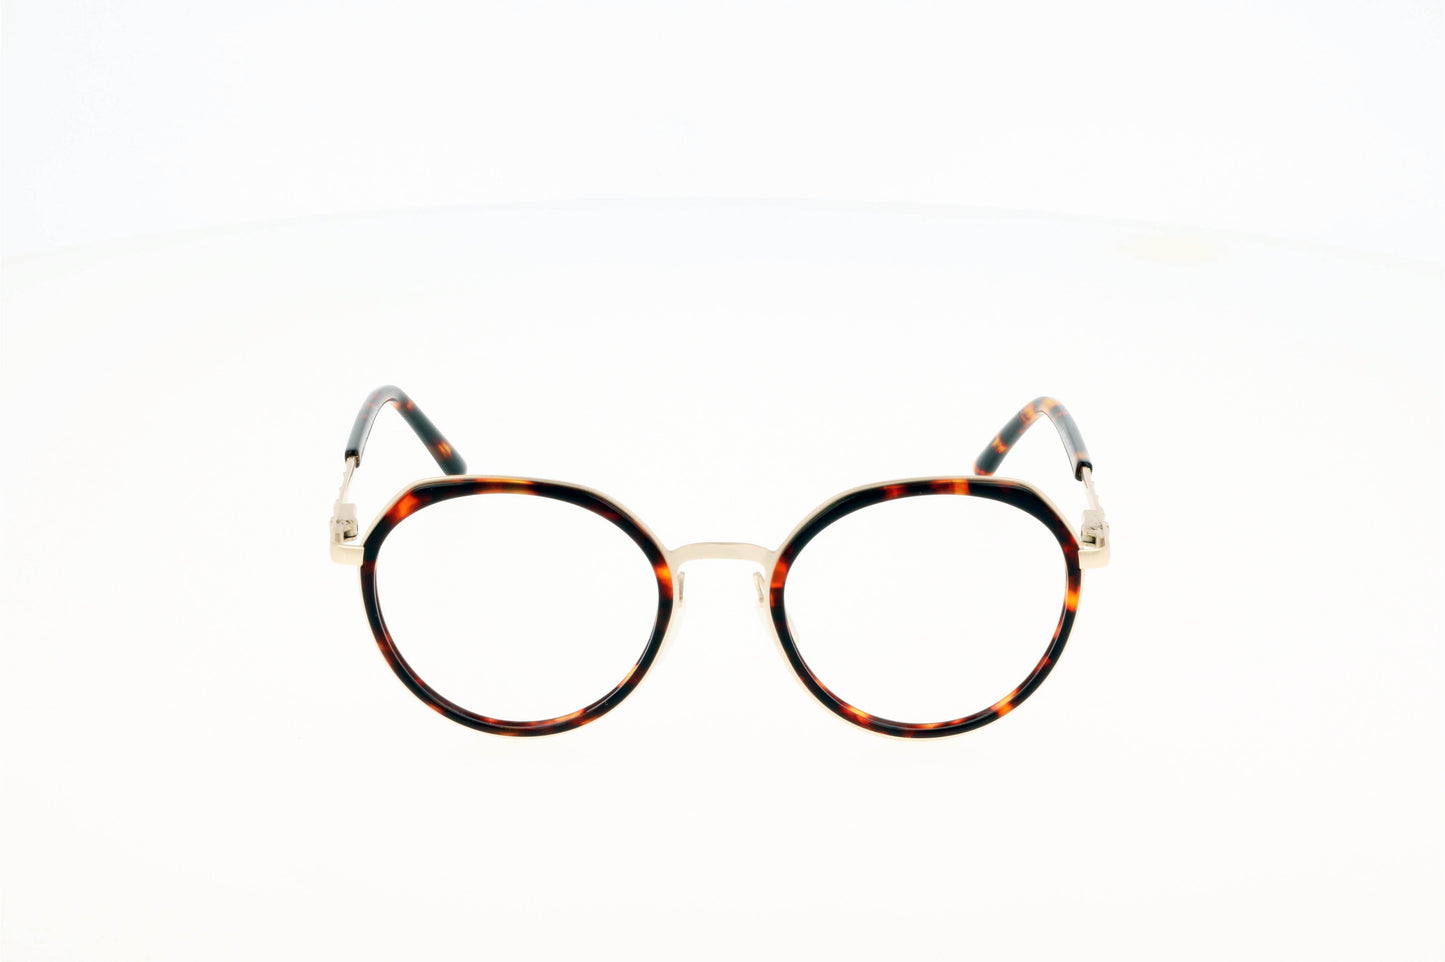 Originel eyewear France vous propose une lunette combinée pour femme. C'est une lunette originale et tendance.